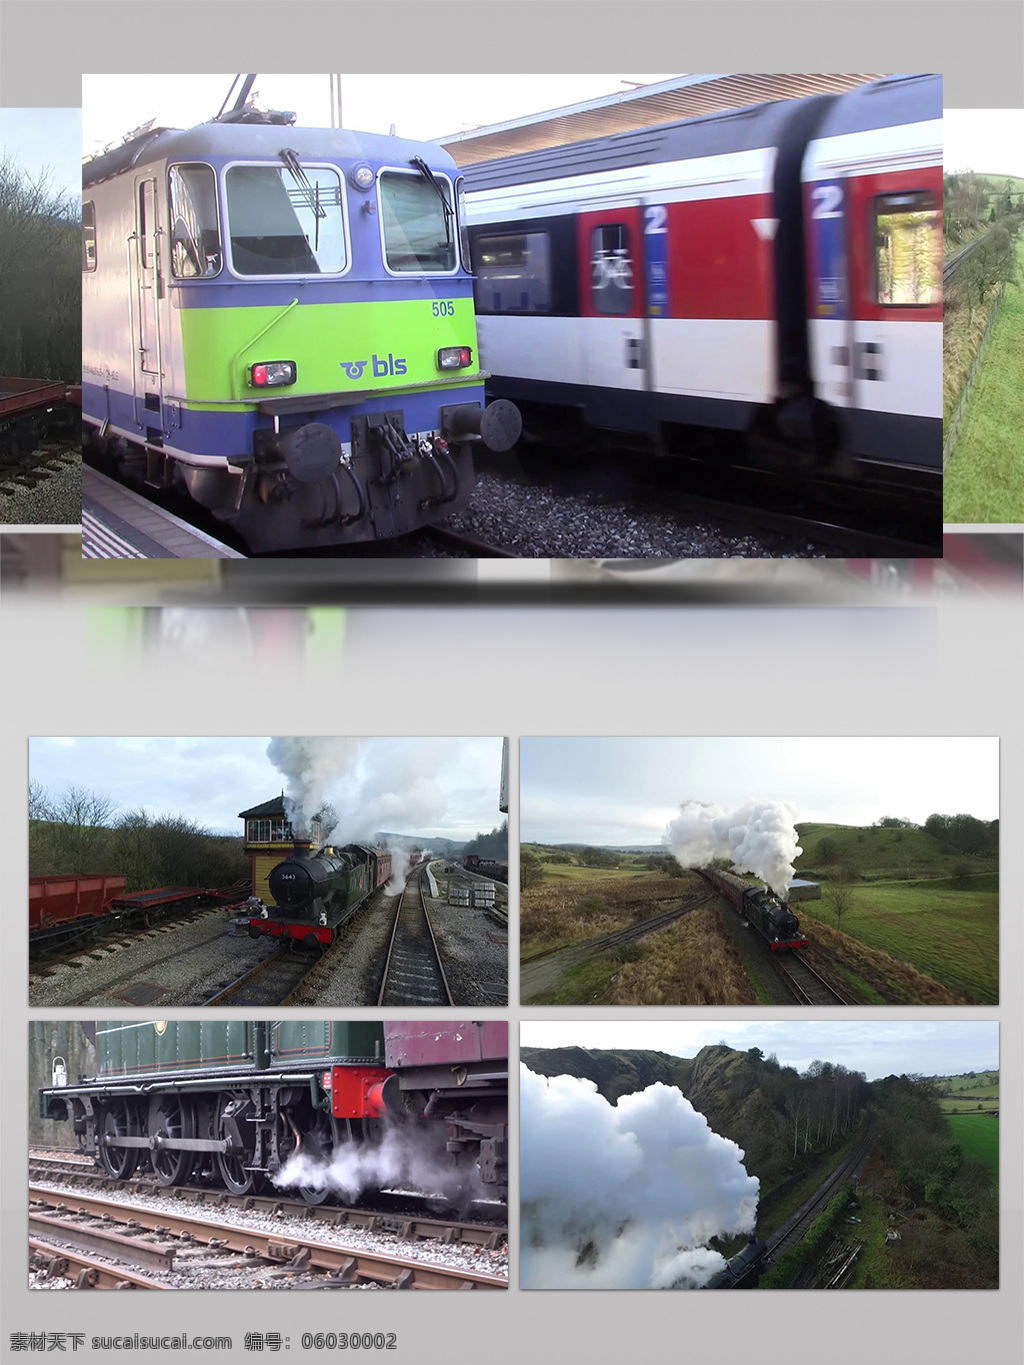 一带 一路 铁路 交通 实拍 视频 2018年 高清视频 高铁实拍 火车实拍 实拍视频 实拍素材 铁路交通 一带一路 一带一路项目